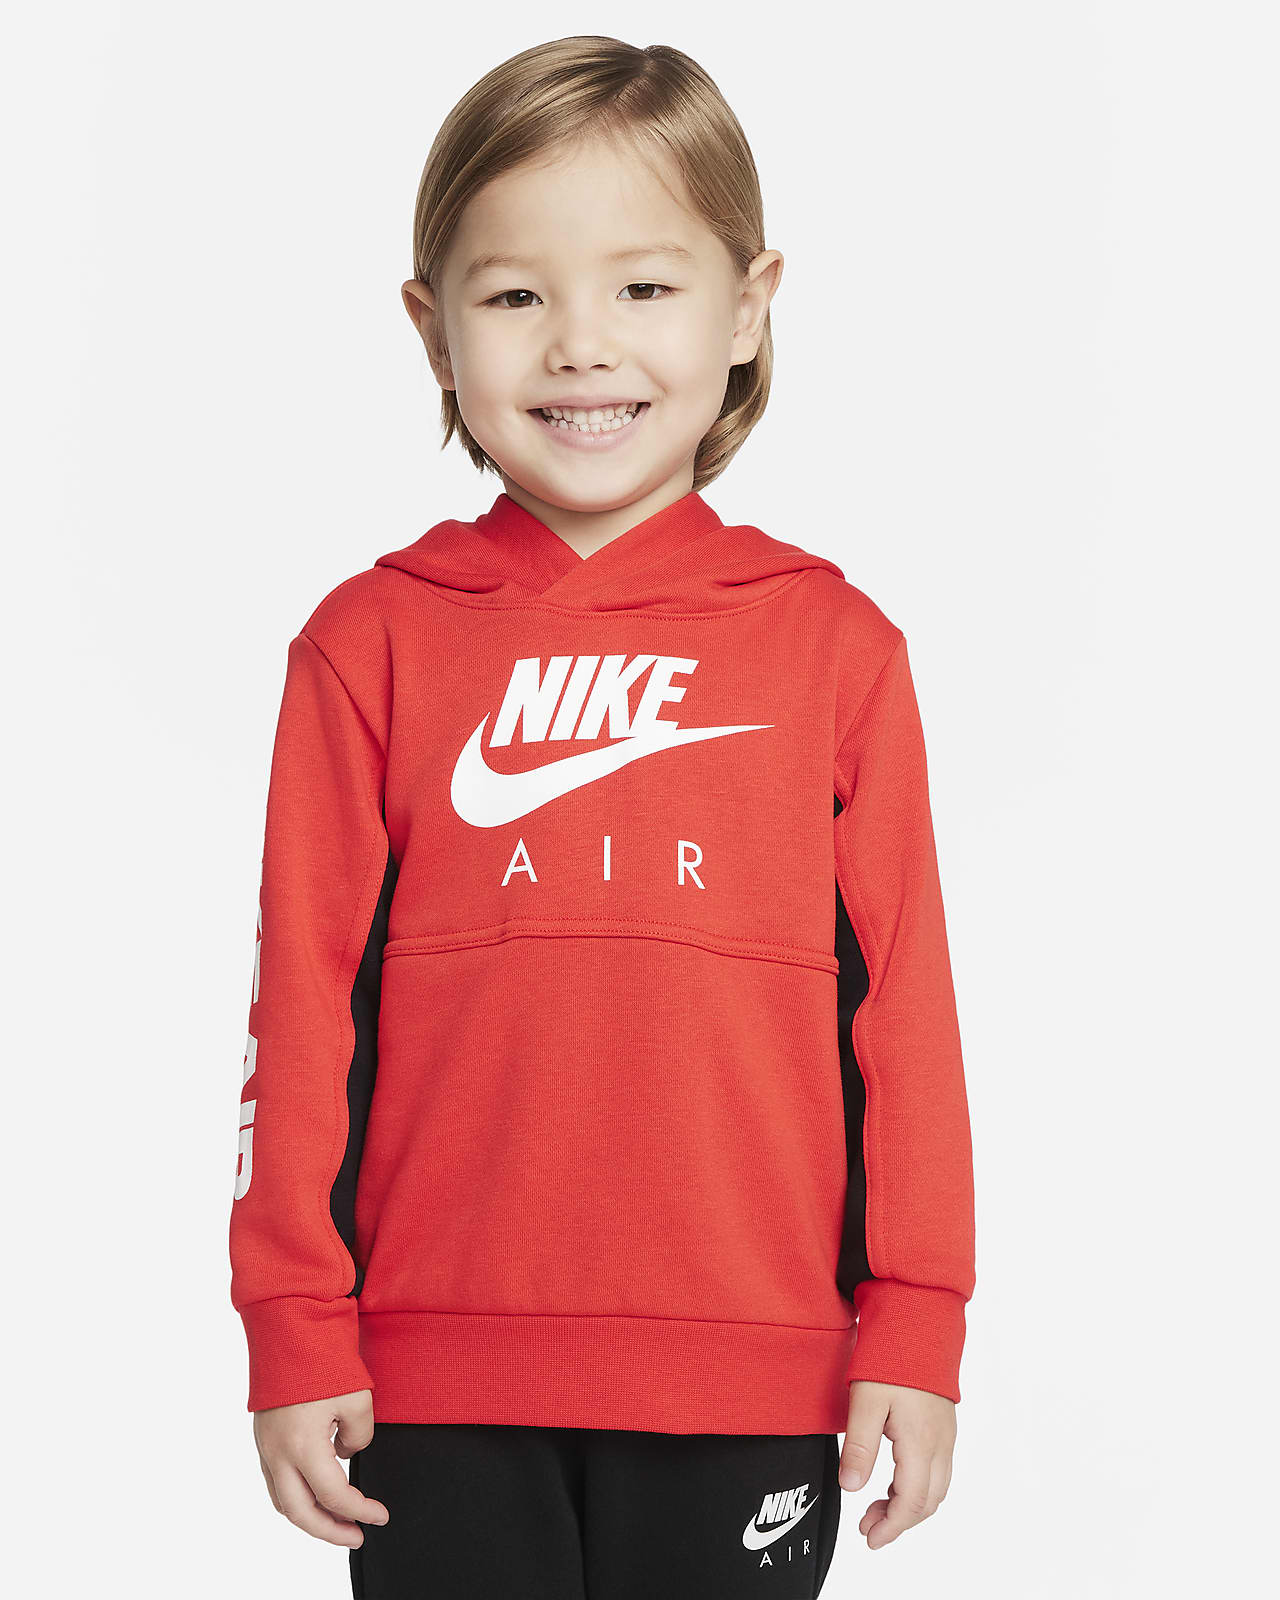 Nike Air 婴童套头连帽衫